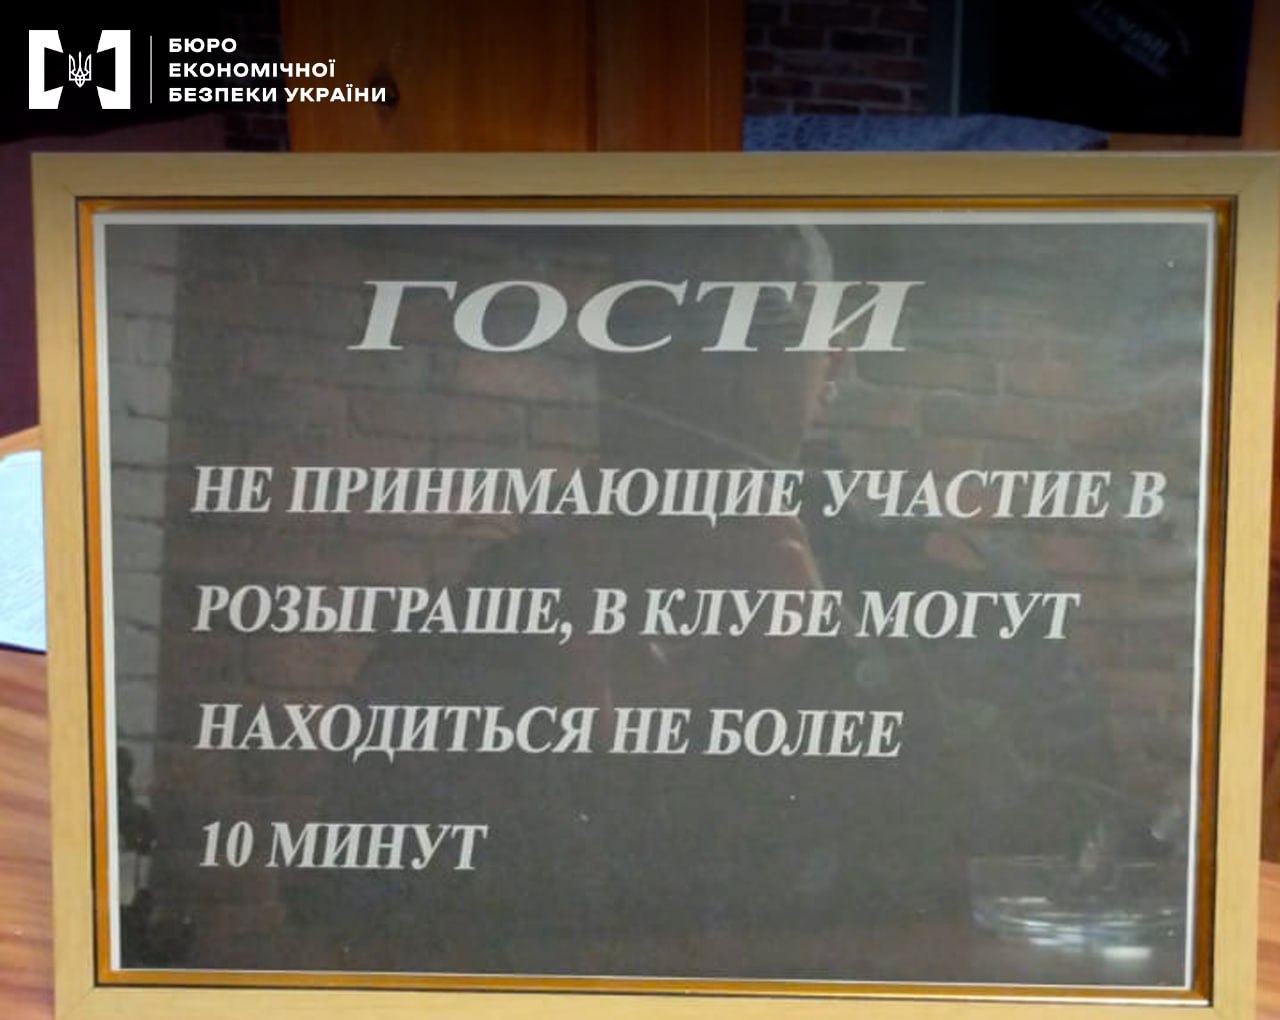 10 минут не играешь – на выход. В трех городах Киевской области закрыли подпольные казино